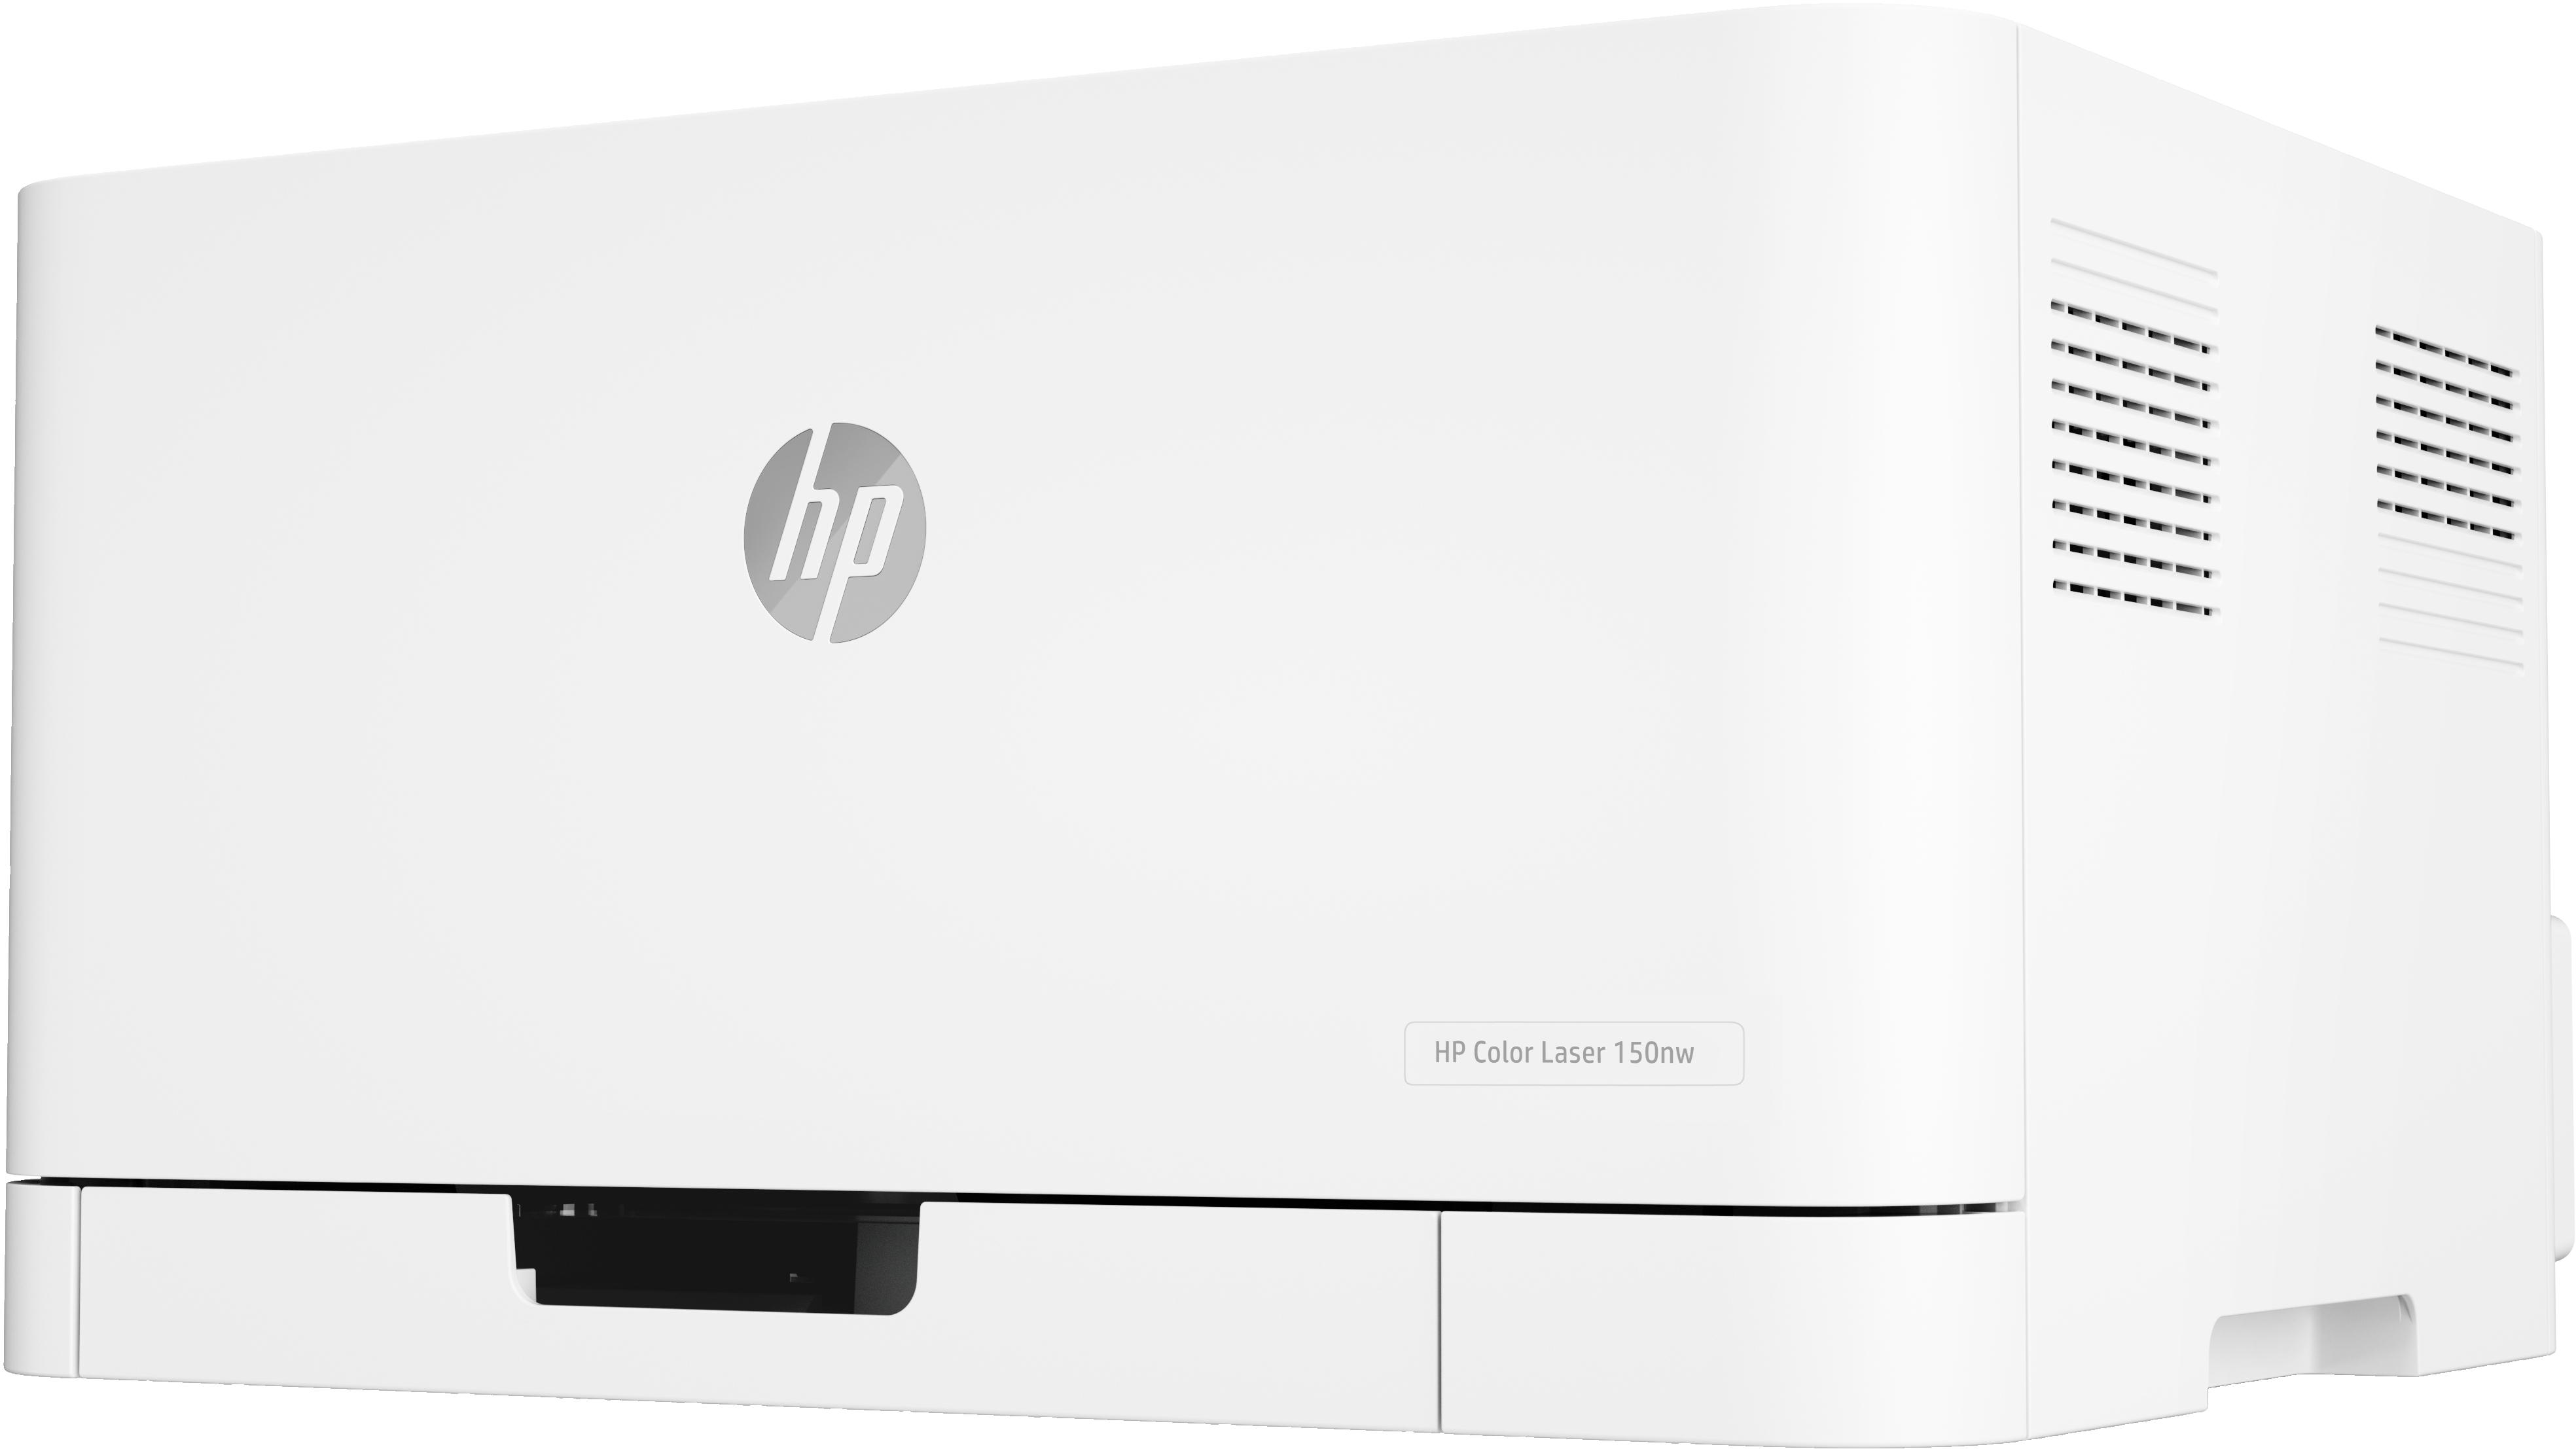 HP - Impressora Jato de Tinta HP Color Laser 150nw